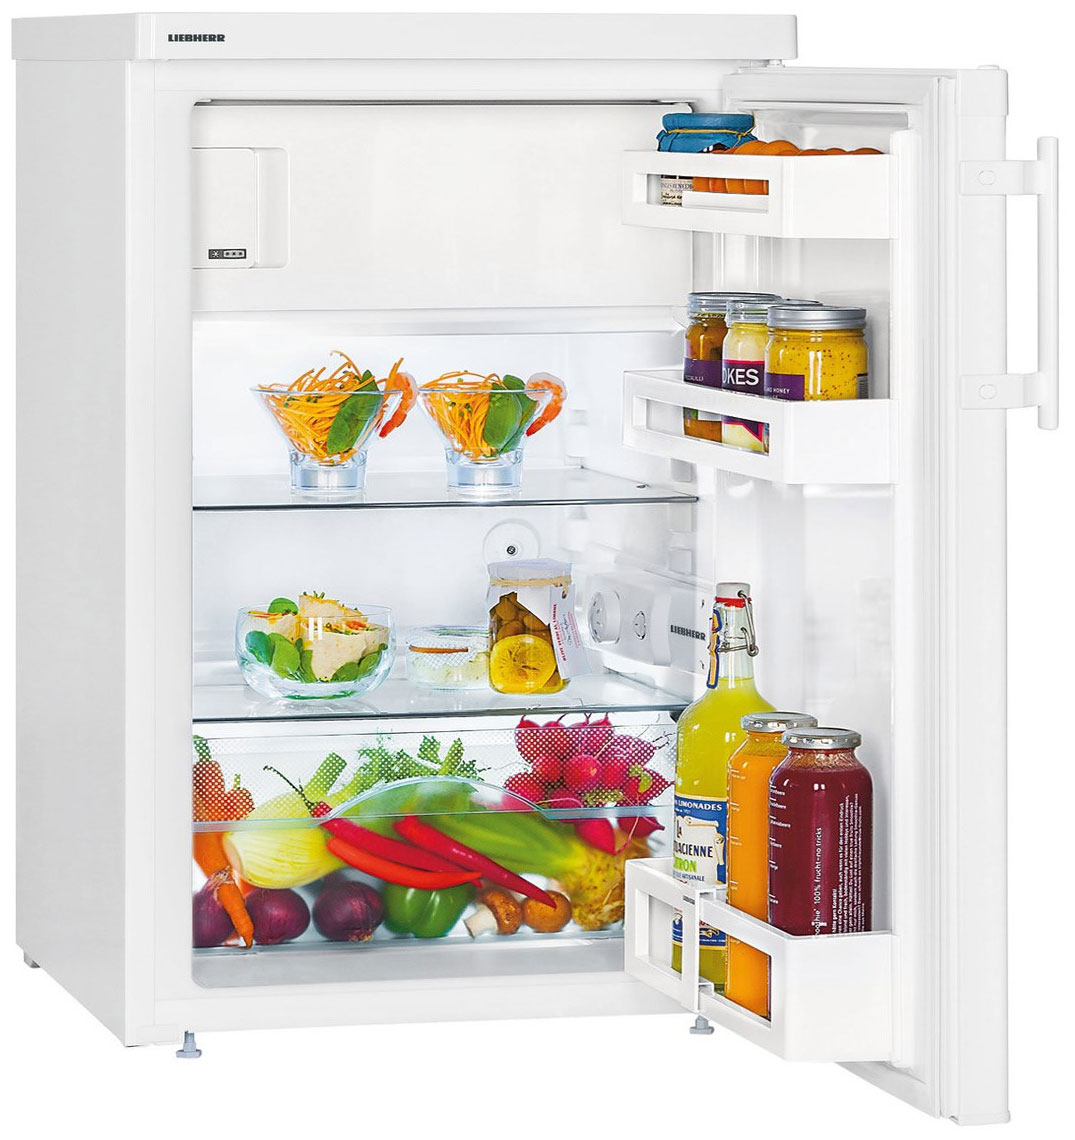 Однокамерный холодильник Liebherr T 1414-22 холодильник liebherr uk 1414 25 001